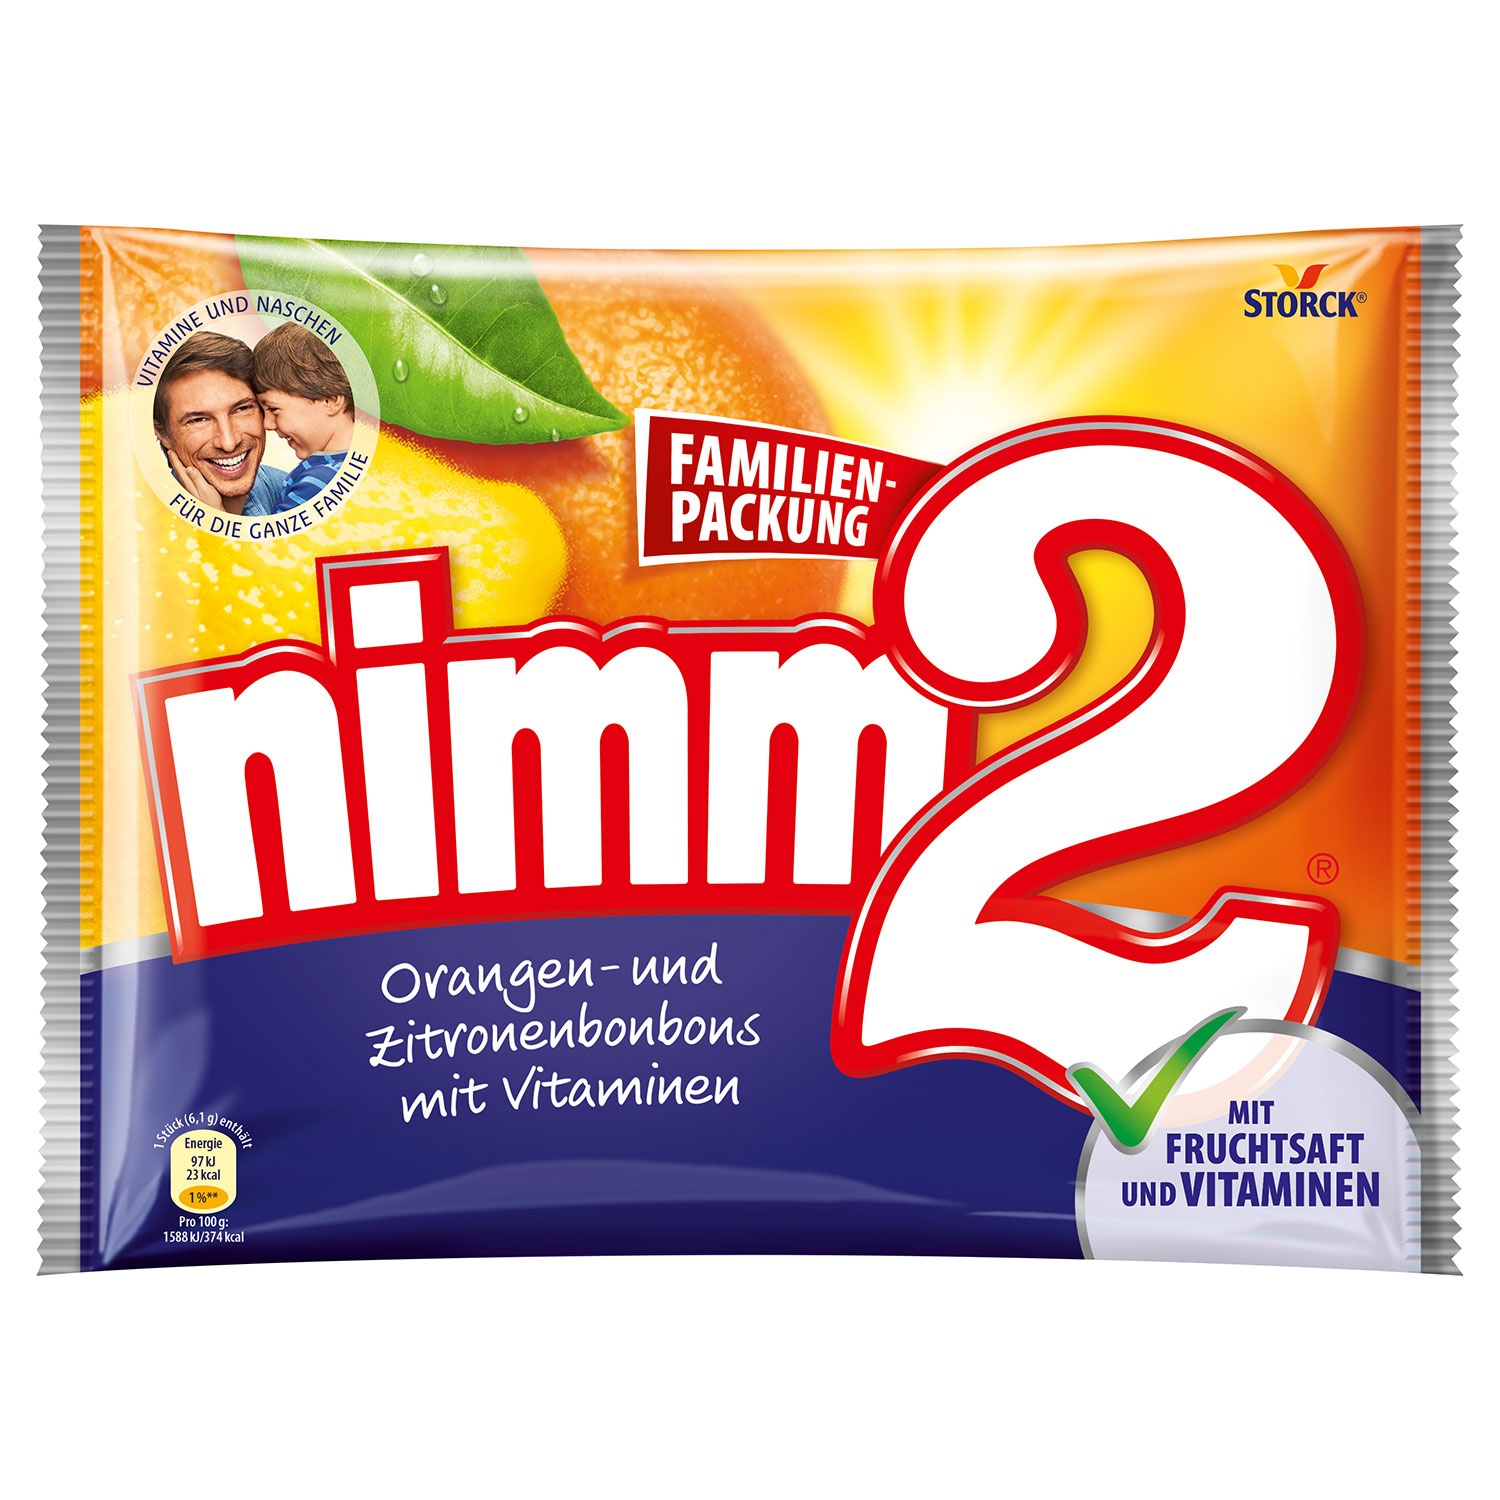 nimm2 Orangen-und Zitronenbonbons mit Vitaminen Familienpackung 429g